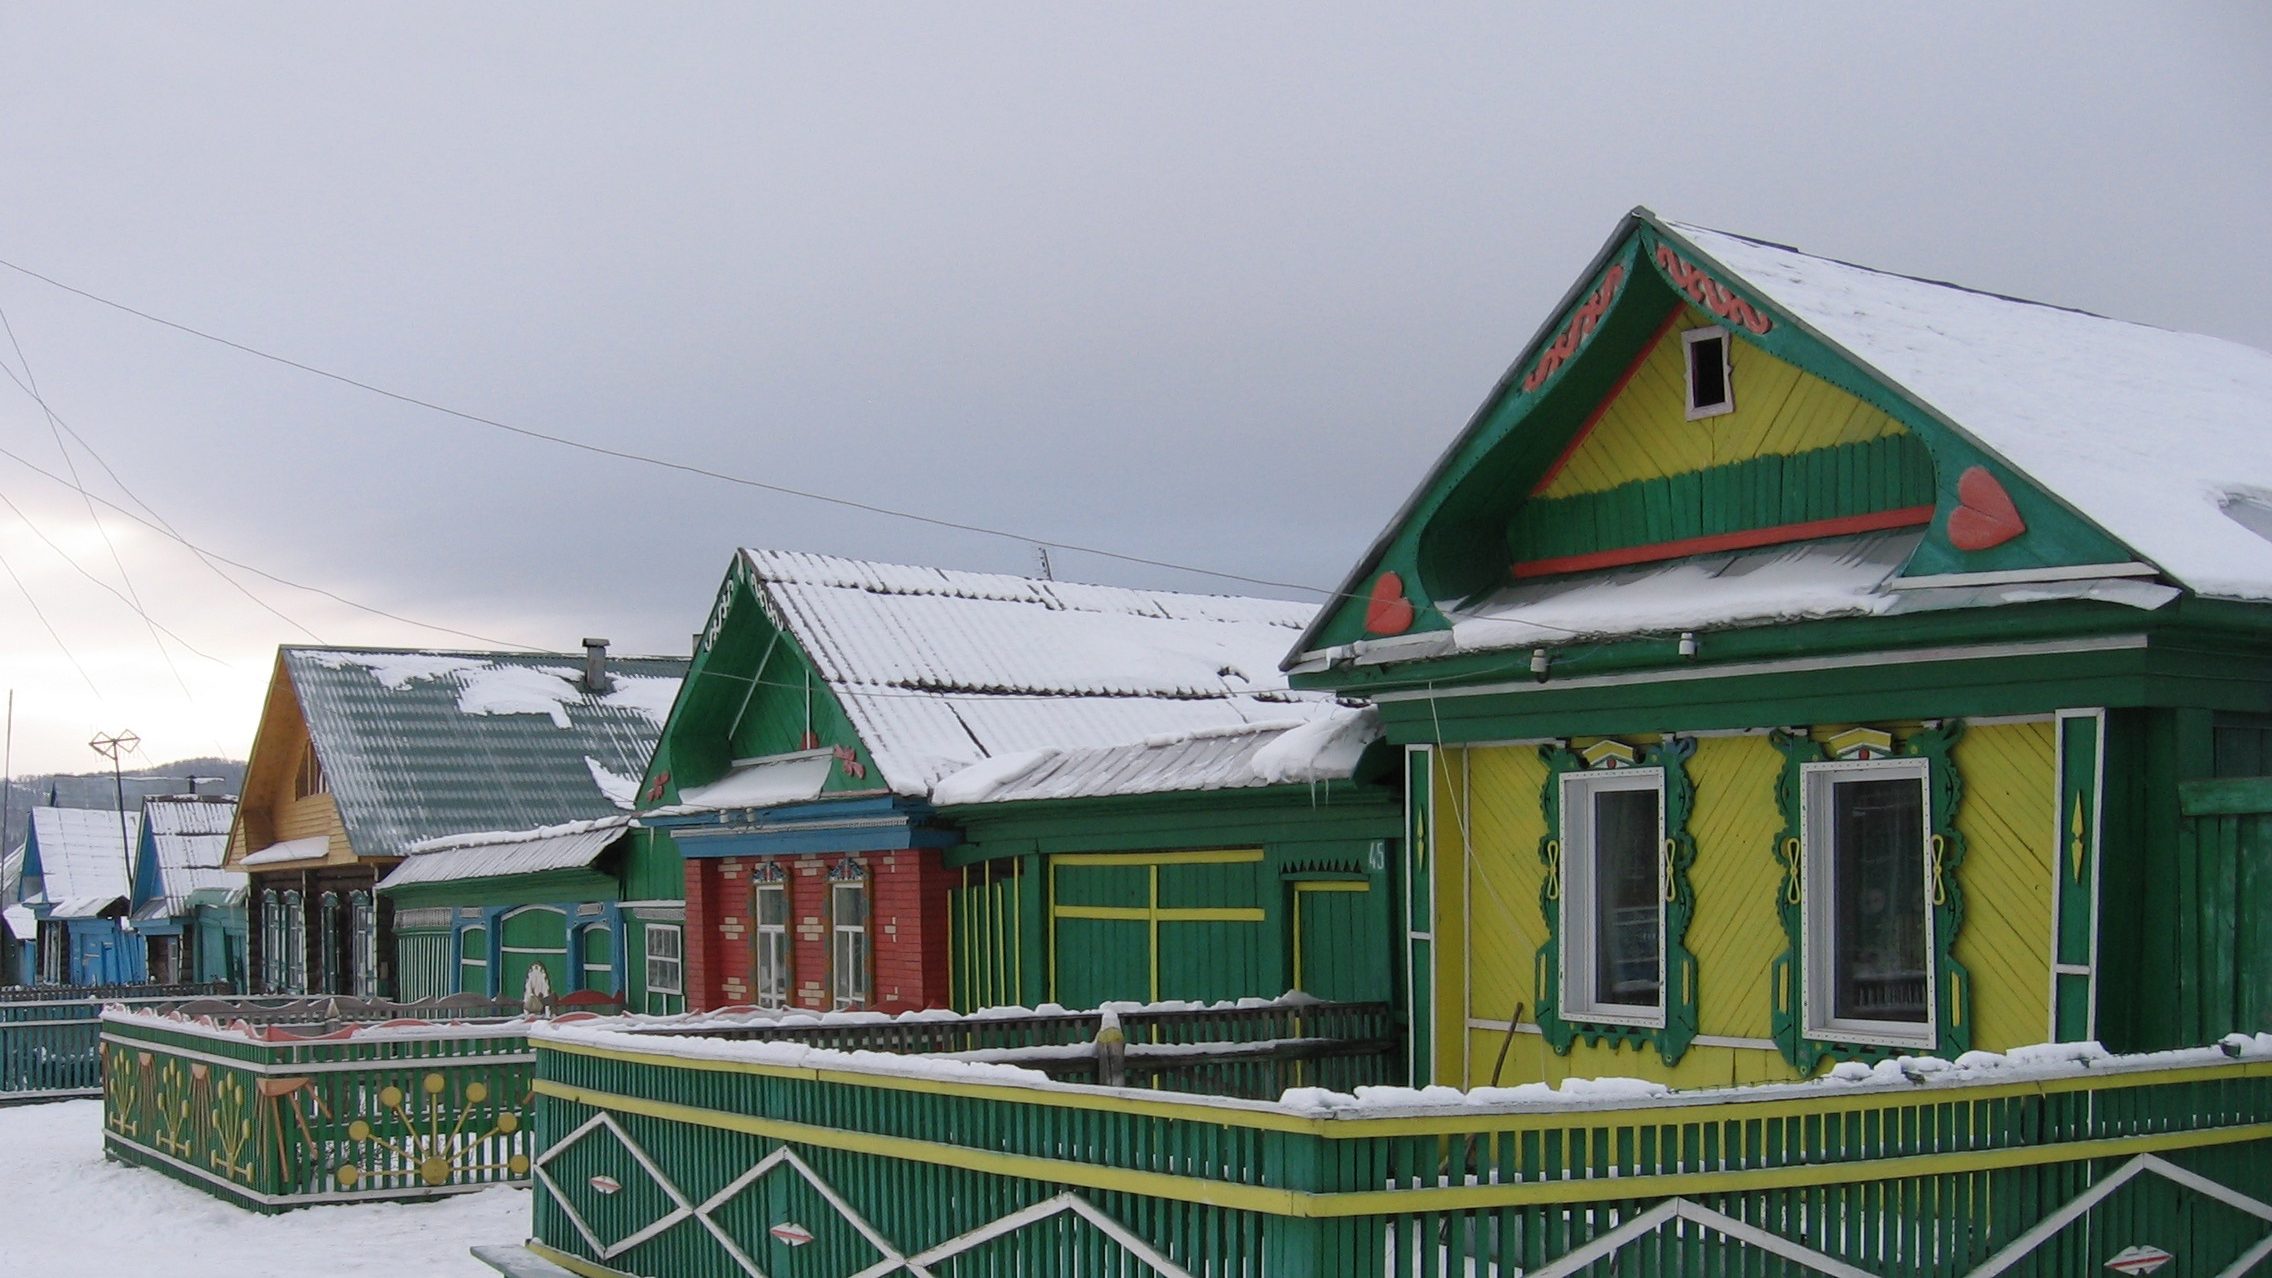 Южный Урал в зимнем варианте. Что увидеть по дороге на Белорецк и Магнитогорск